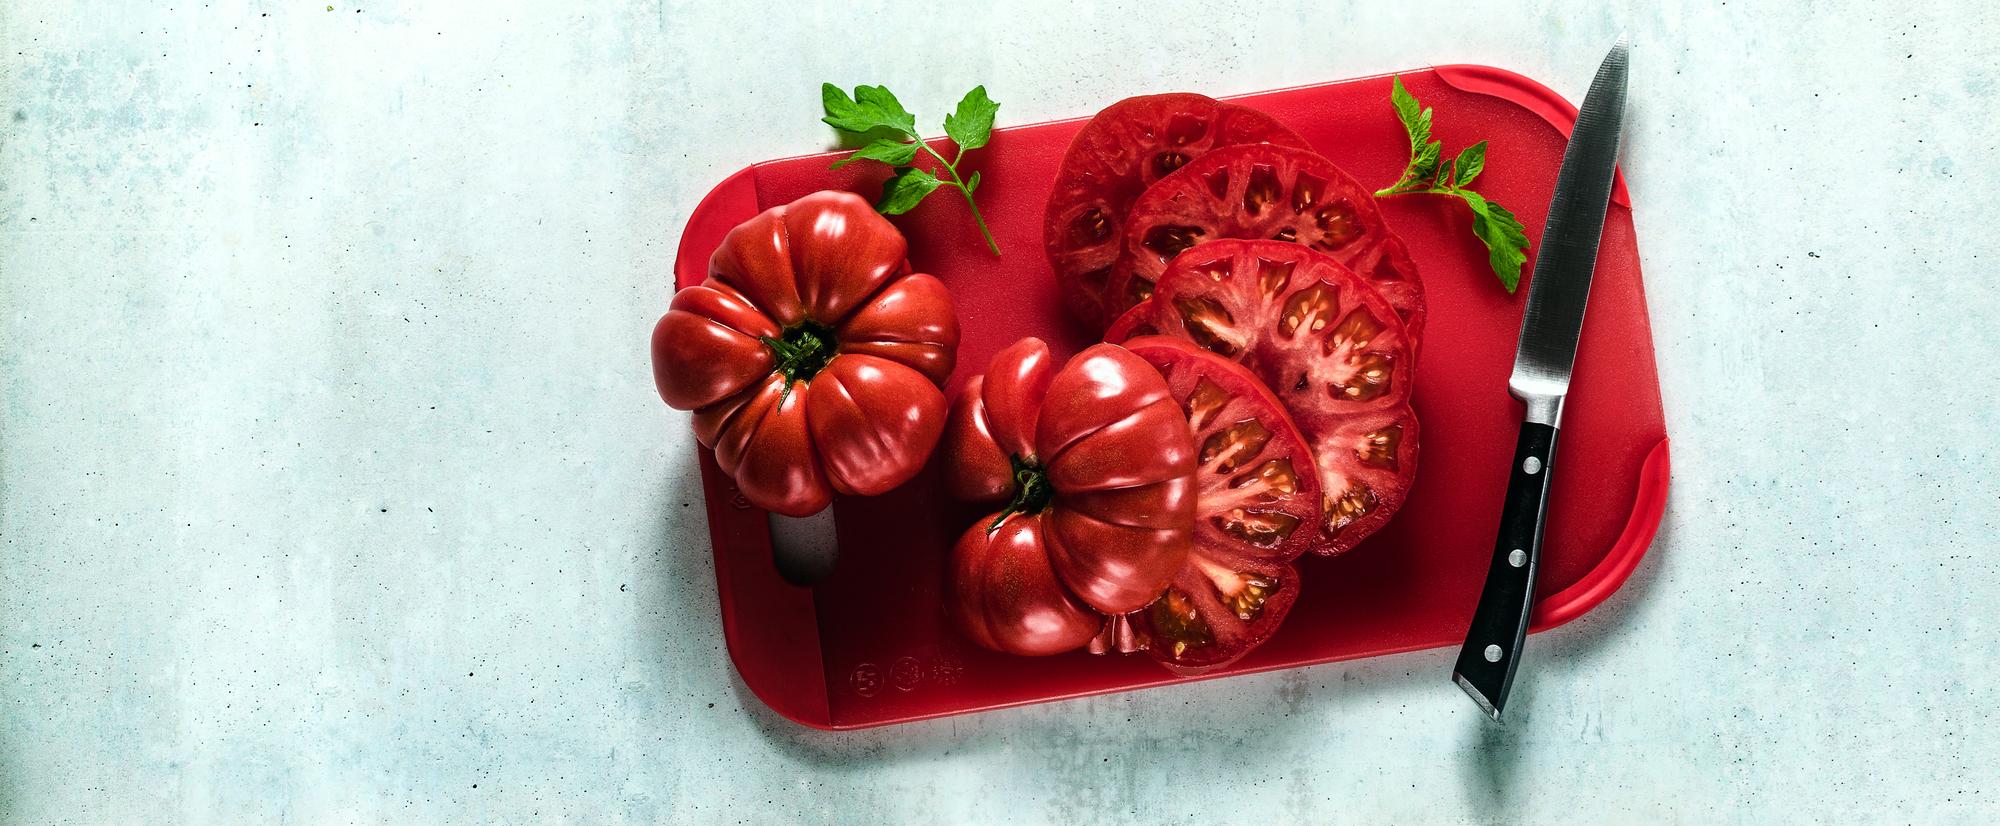 odkryj-gdzie-kupic-nasiona-pomidorow-rosyjskich